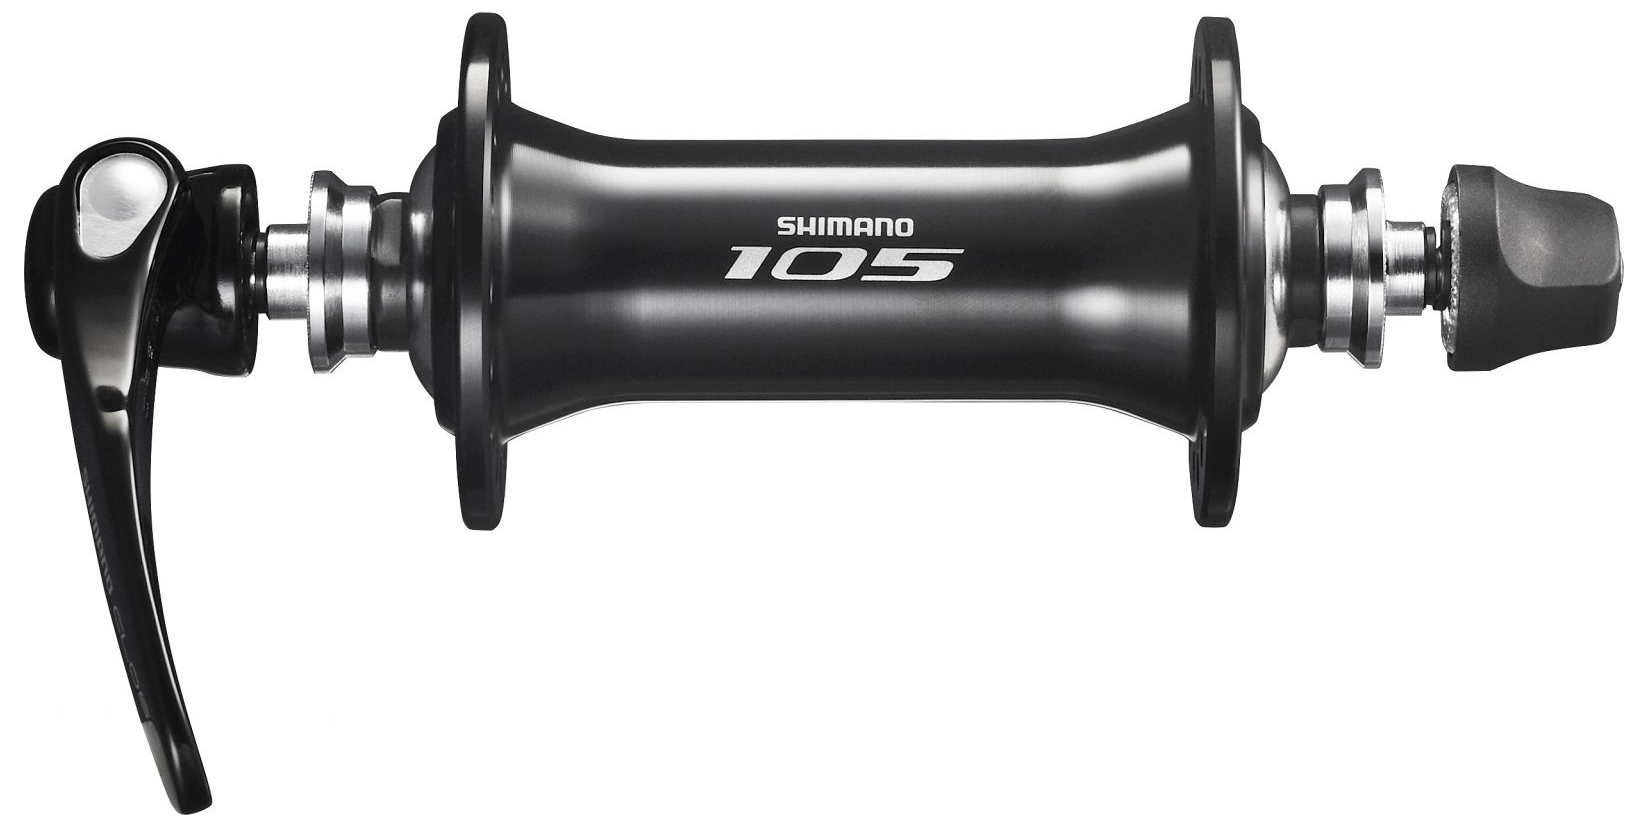  Втулка для велосипеда Shimano 105, R7000 (EHBR7000AL)